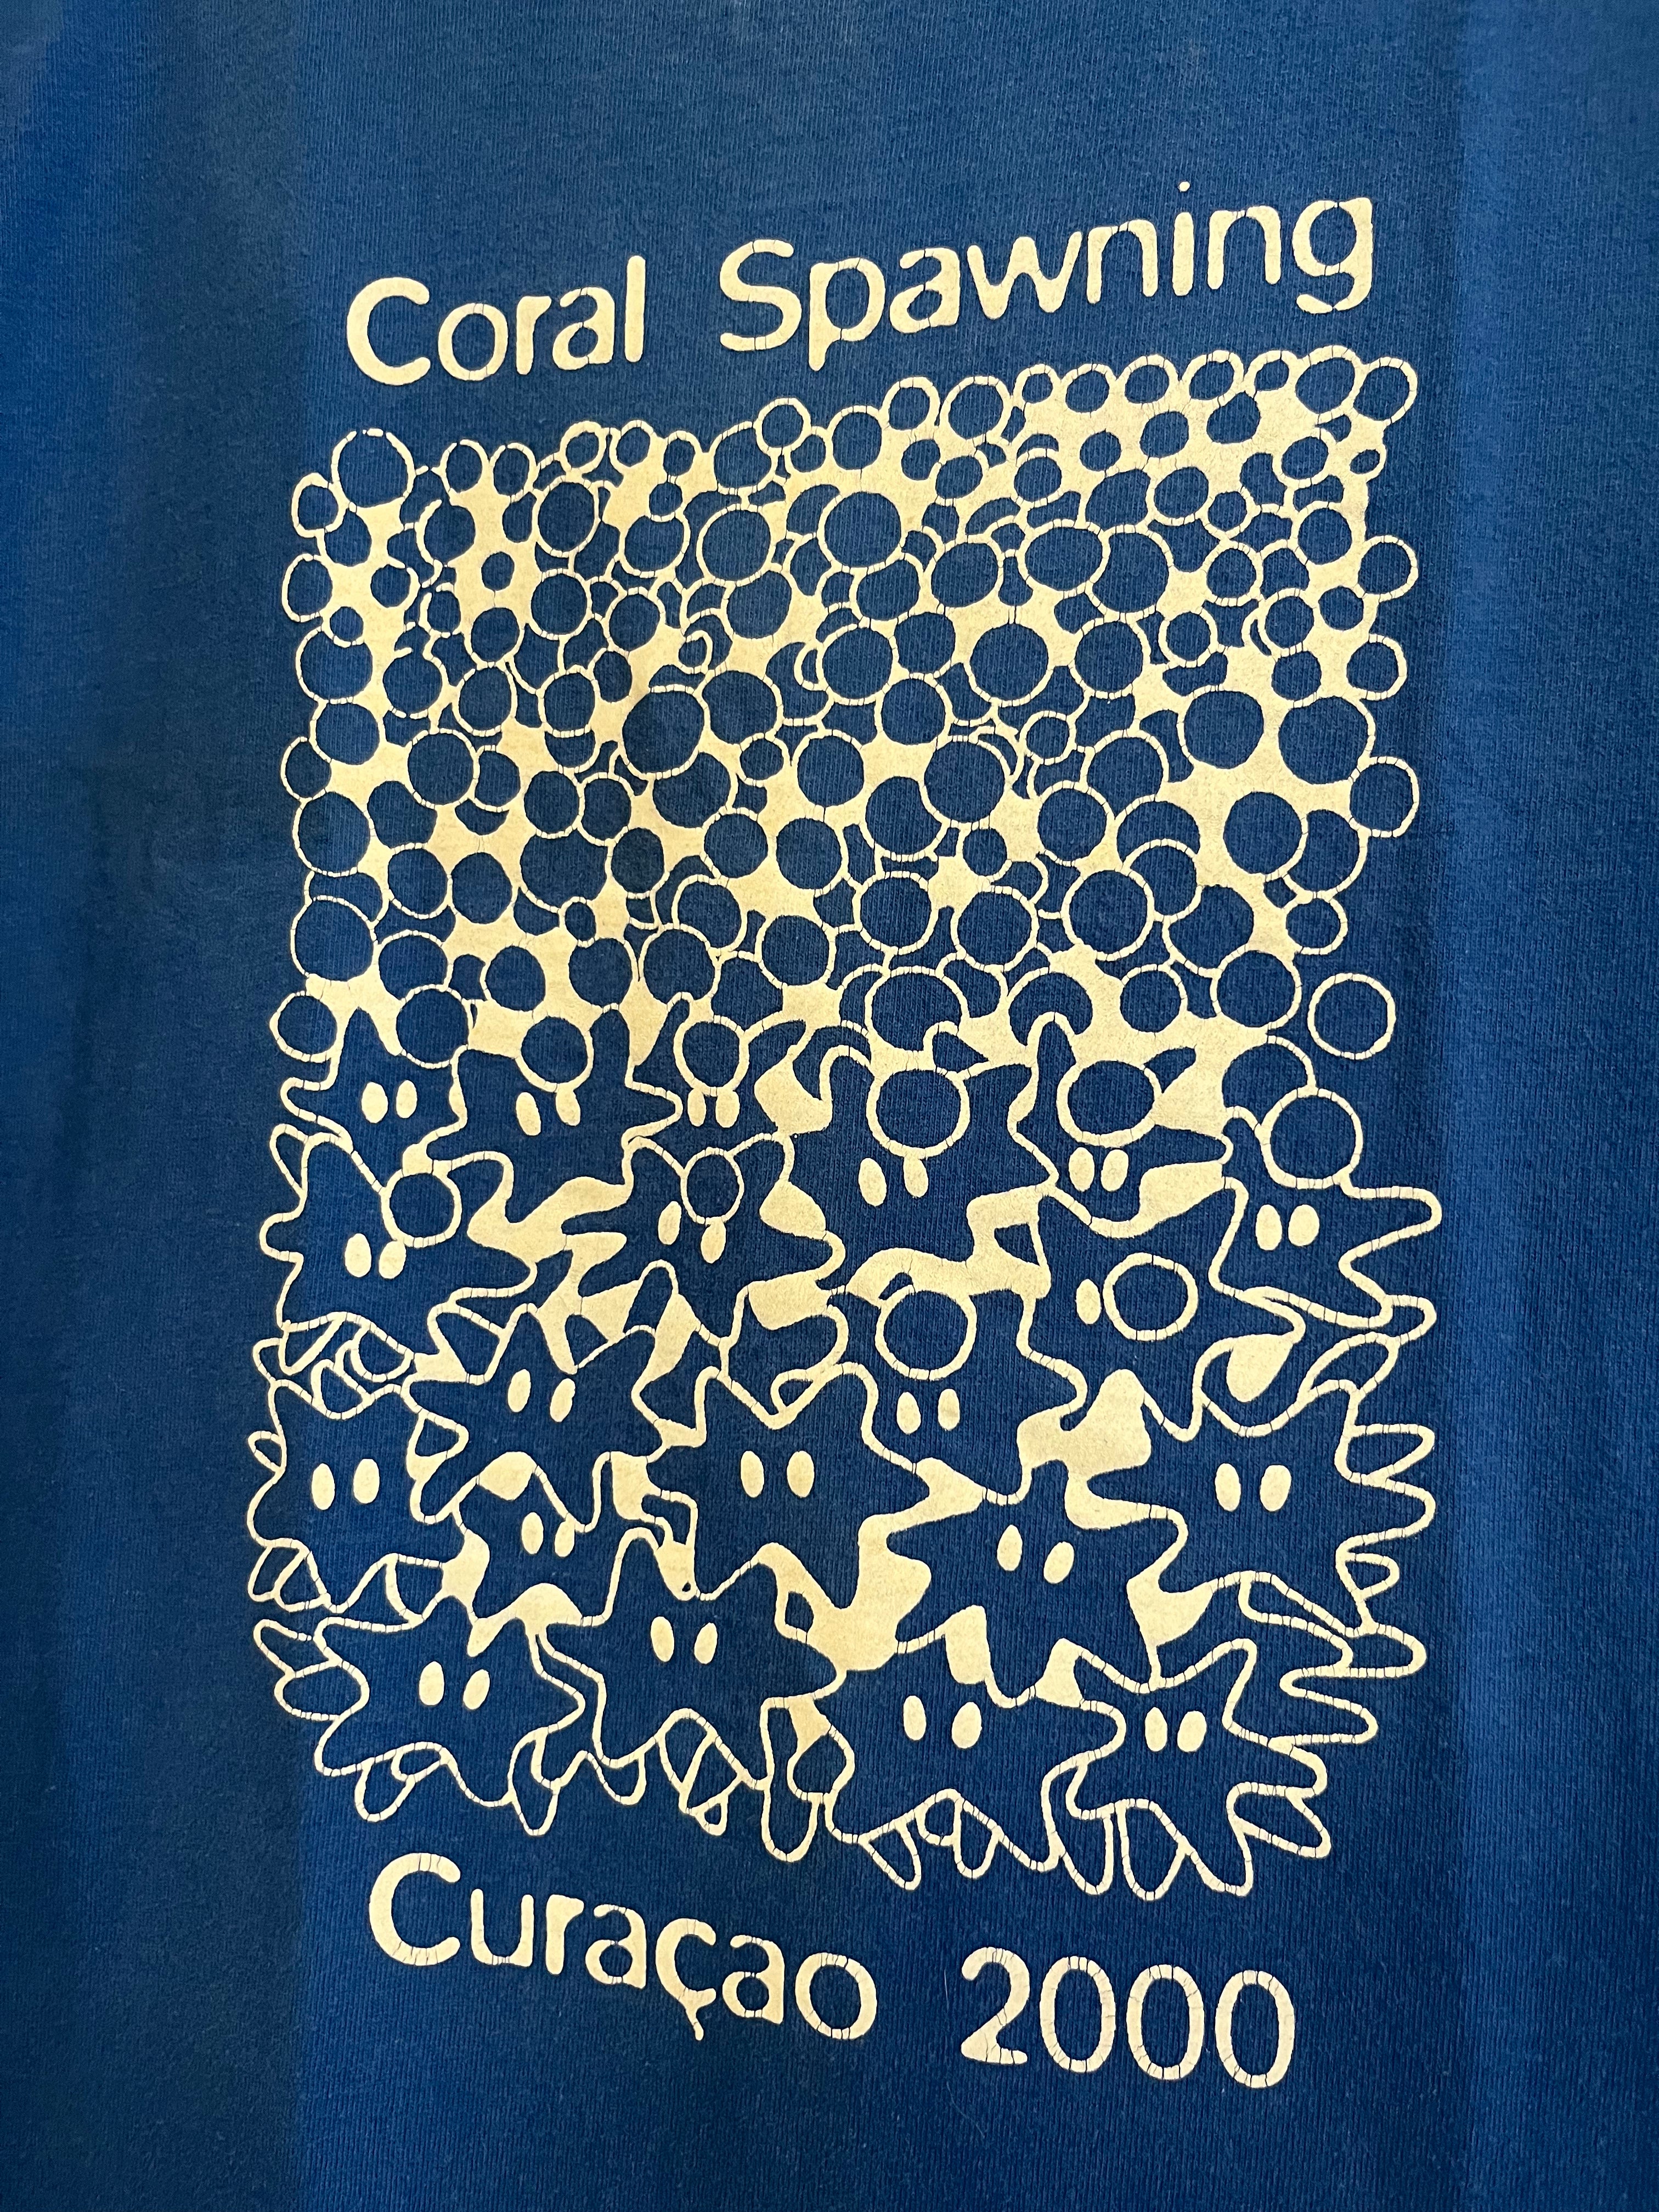 2000 Coral Spawning Curaçao Vintage T-Shirt - Blue - M